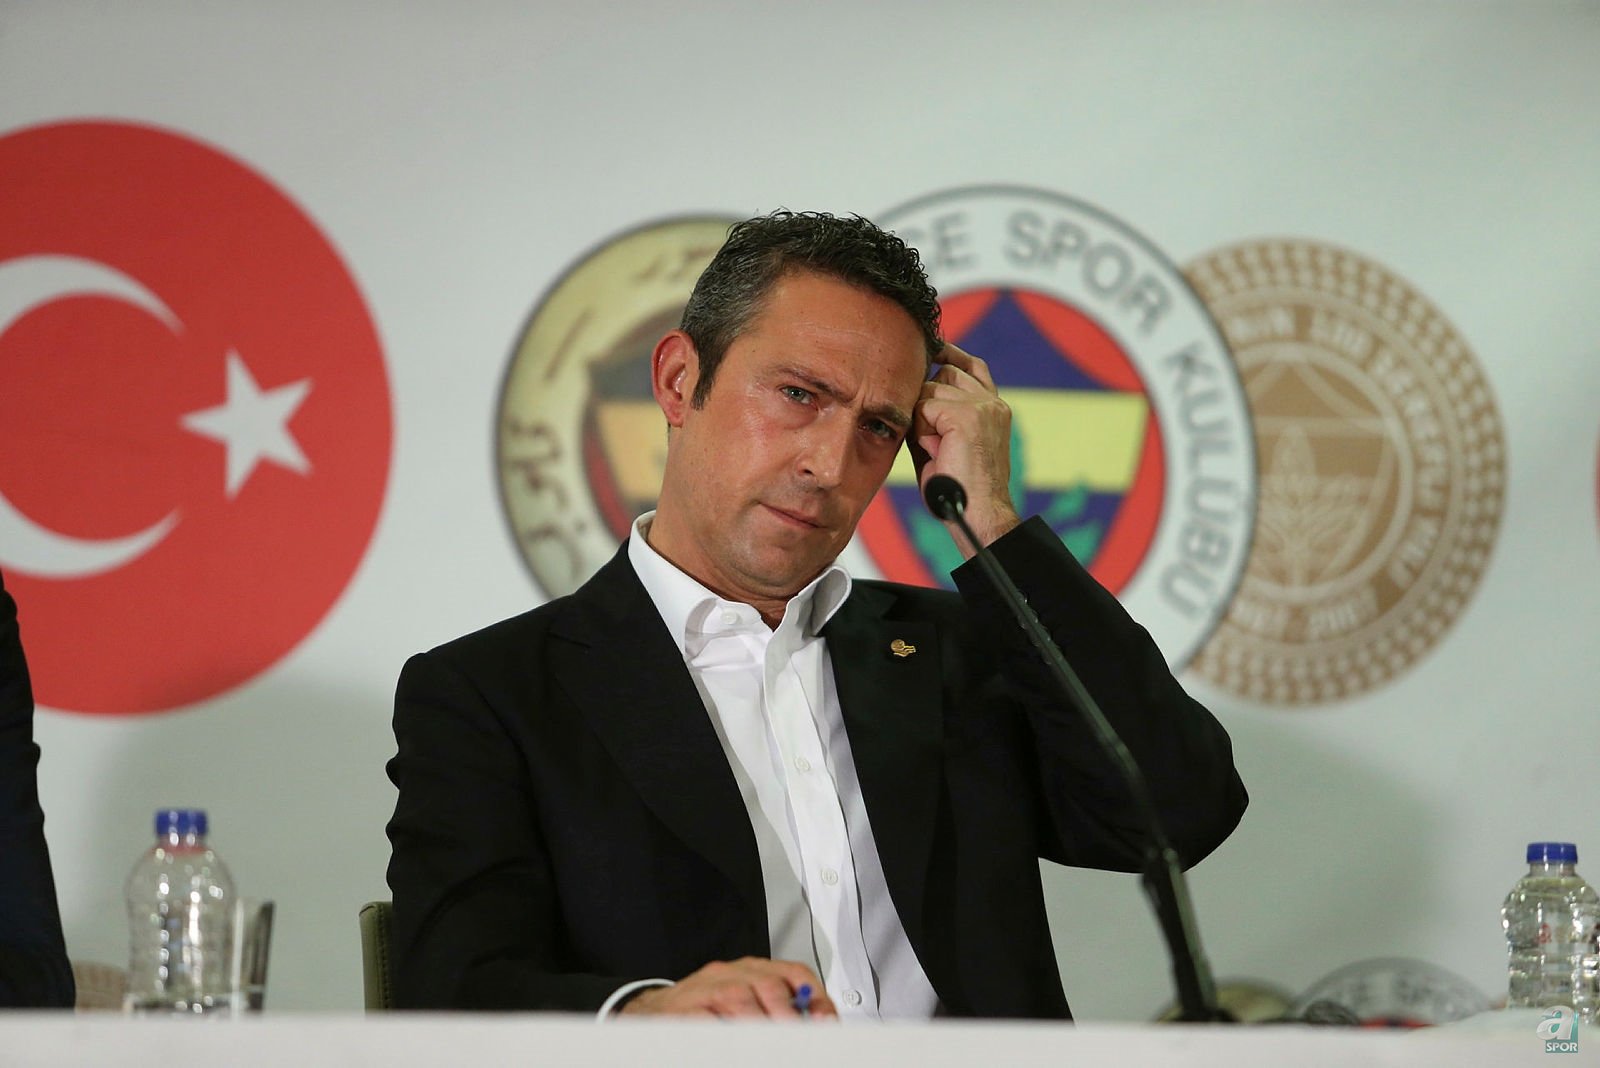 Fenerbahçe de adı sır gibi saklanan teknik direktör iddiası! Golcü transferi ise...